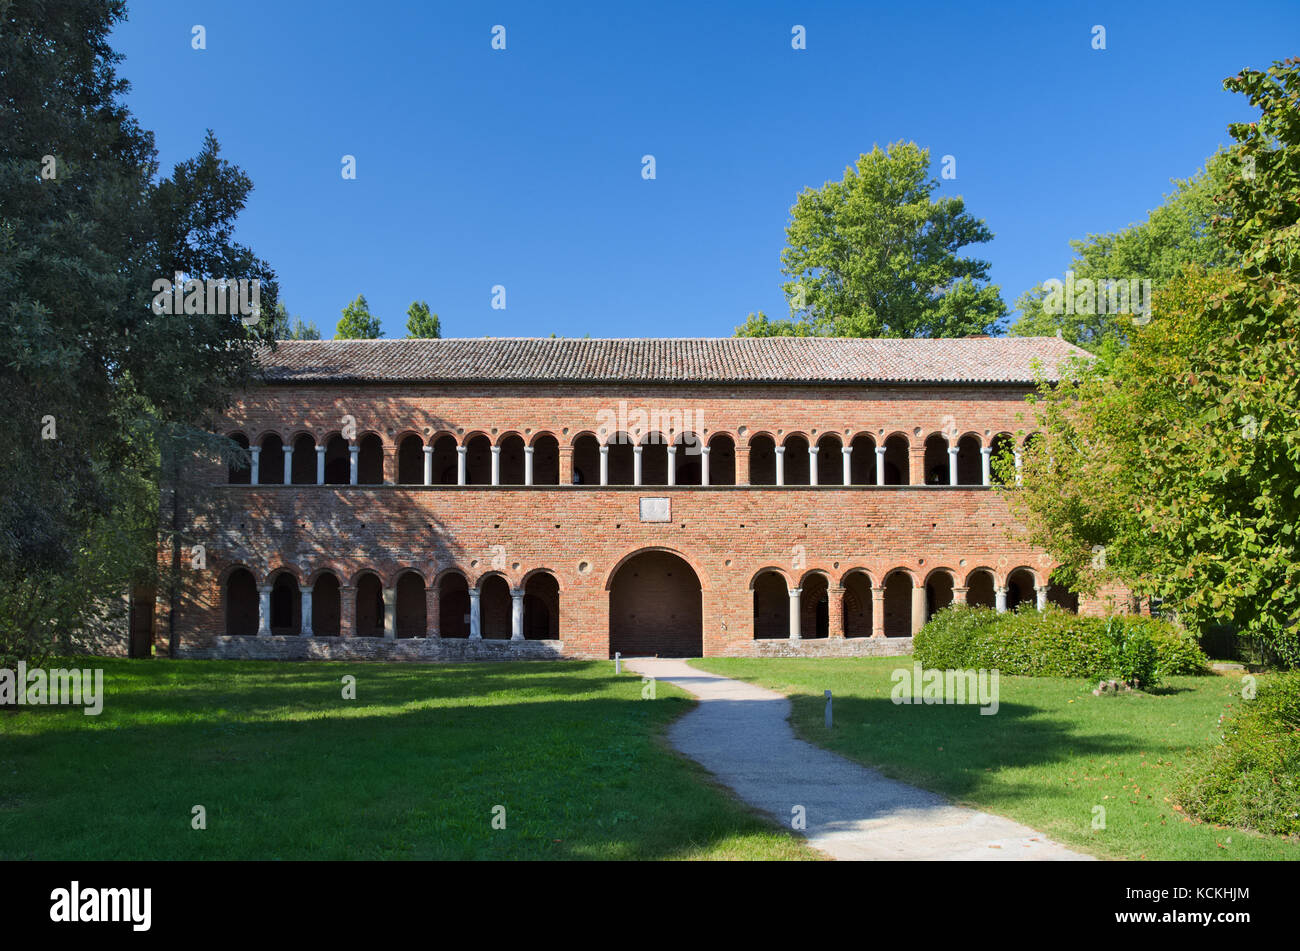 Palazzo della Ragione building next to the Pomposa Abbey Monastery in Codigoro, Ferrara, Italy Stock Photo